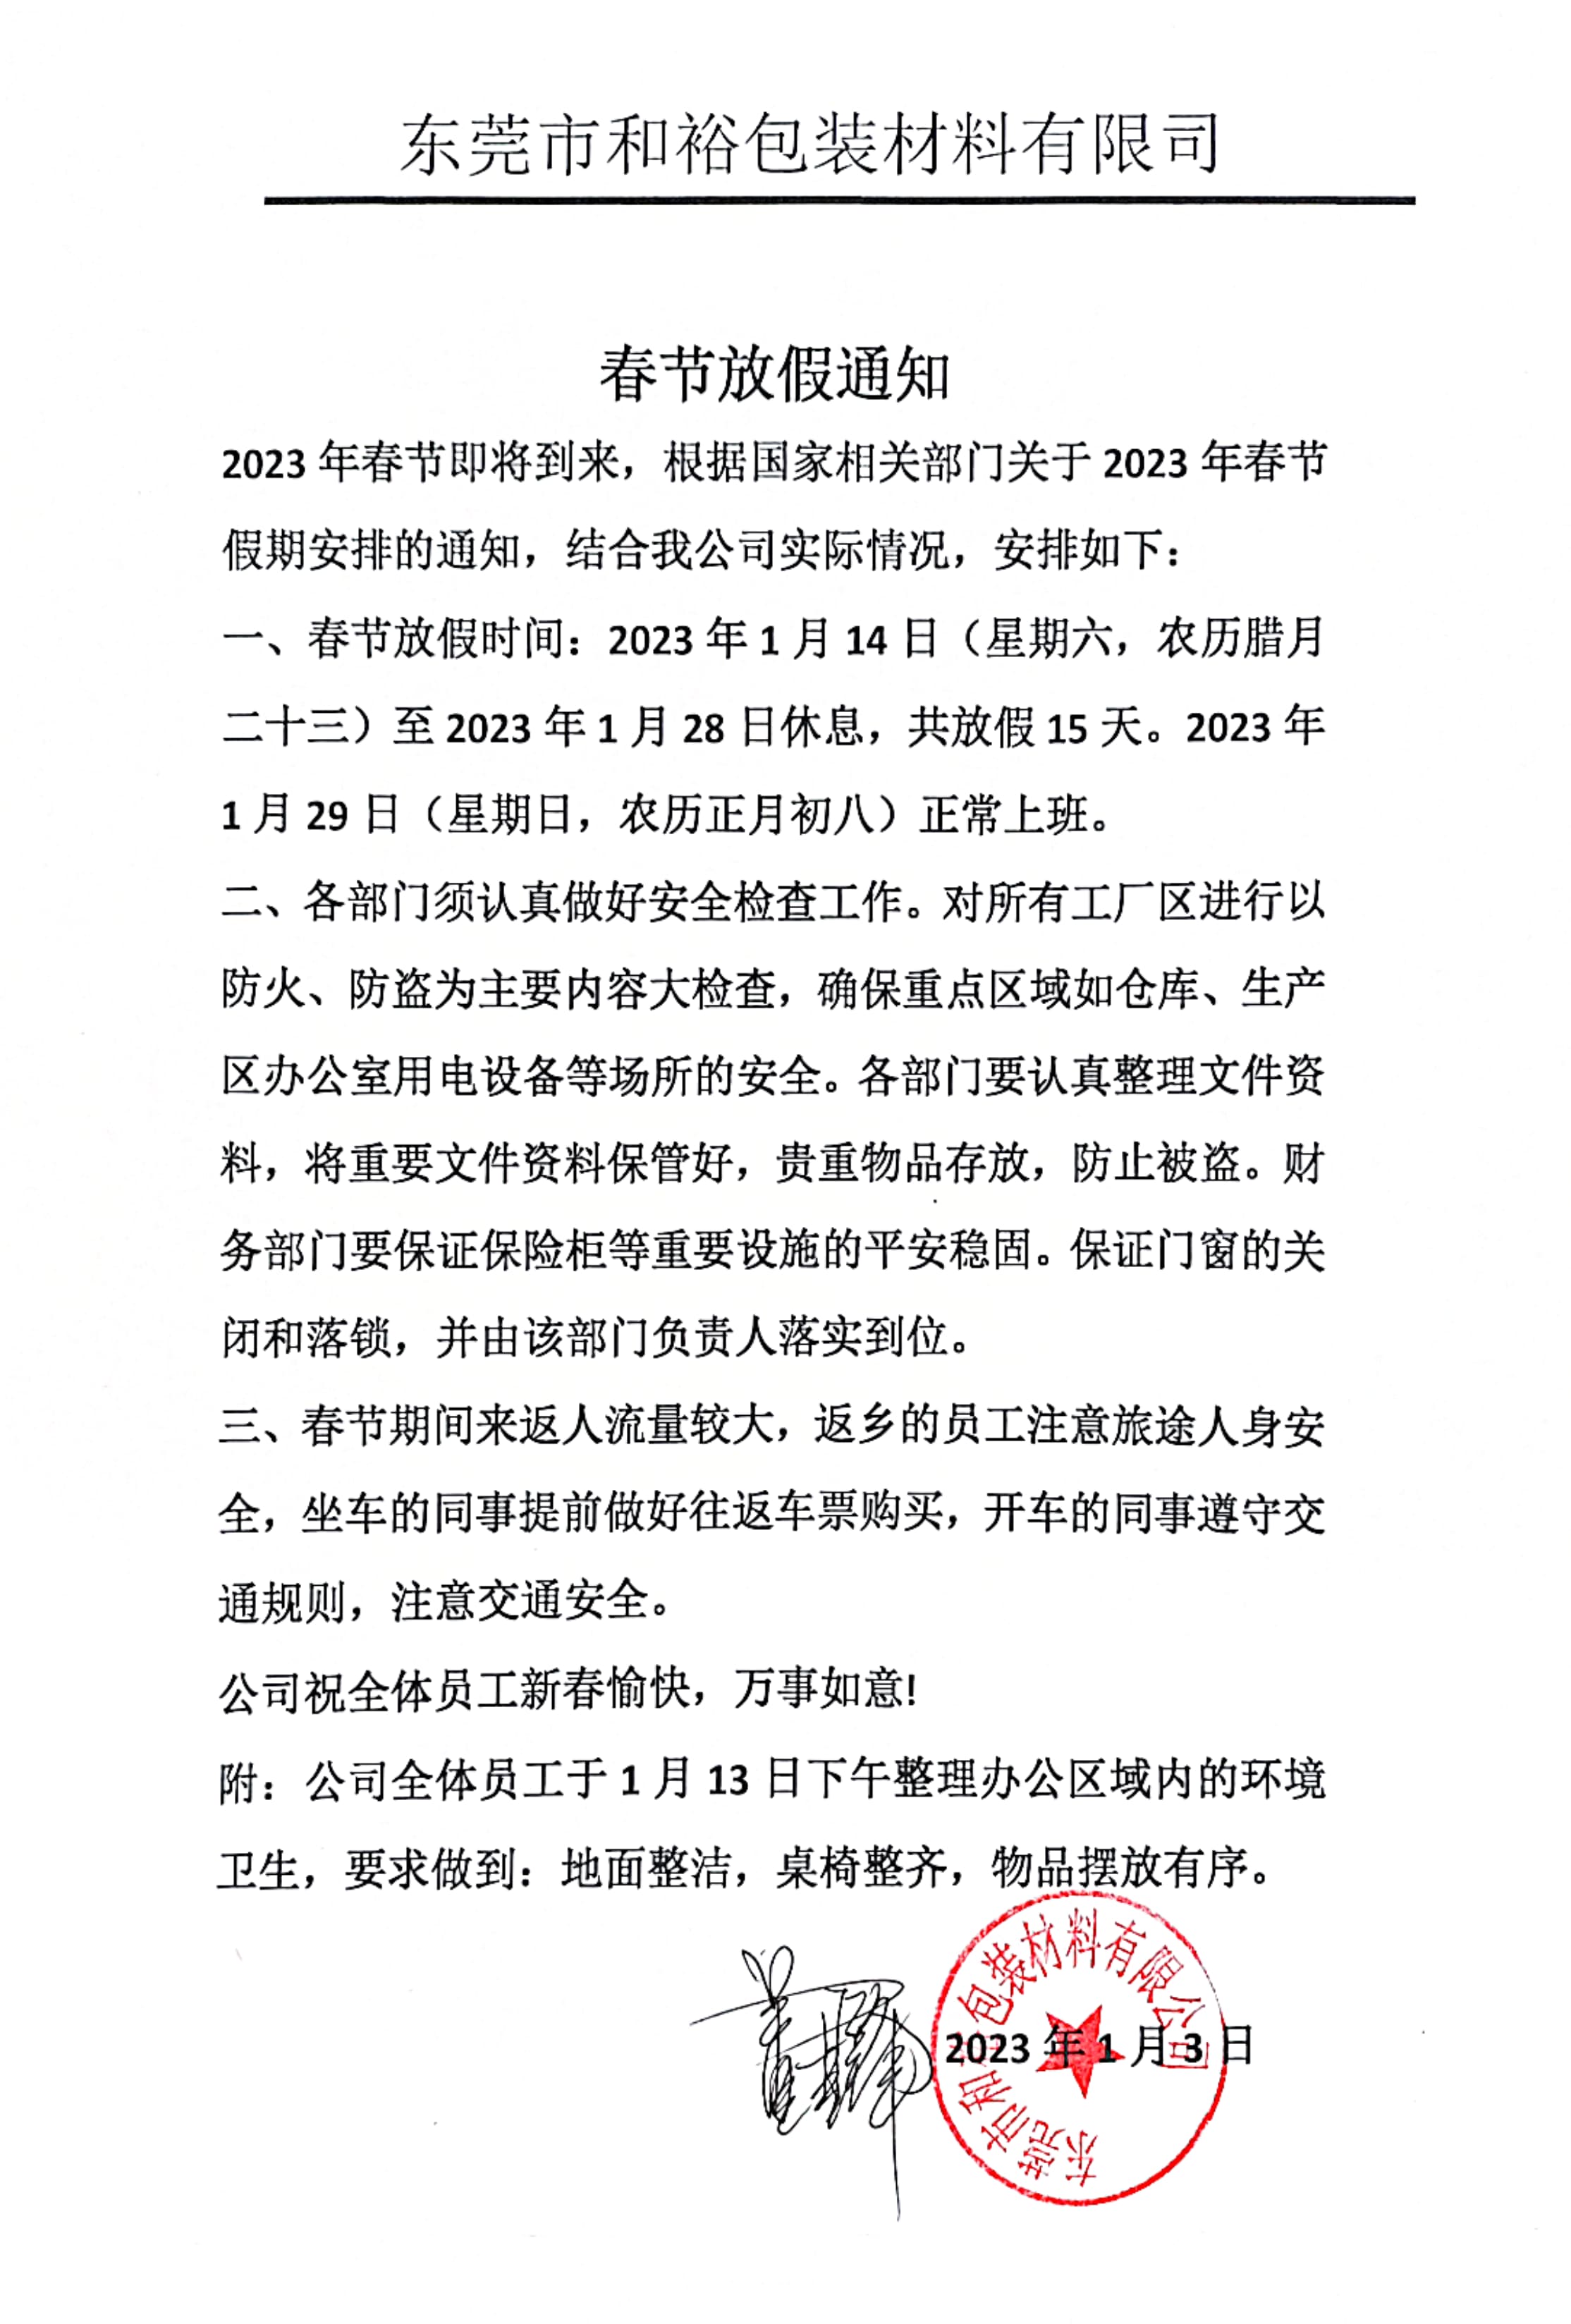 阳江2023年和裕包装春节放假通知